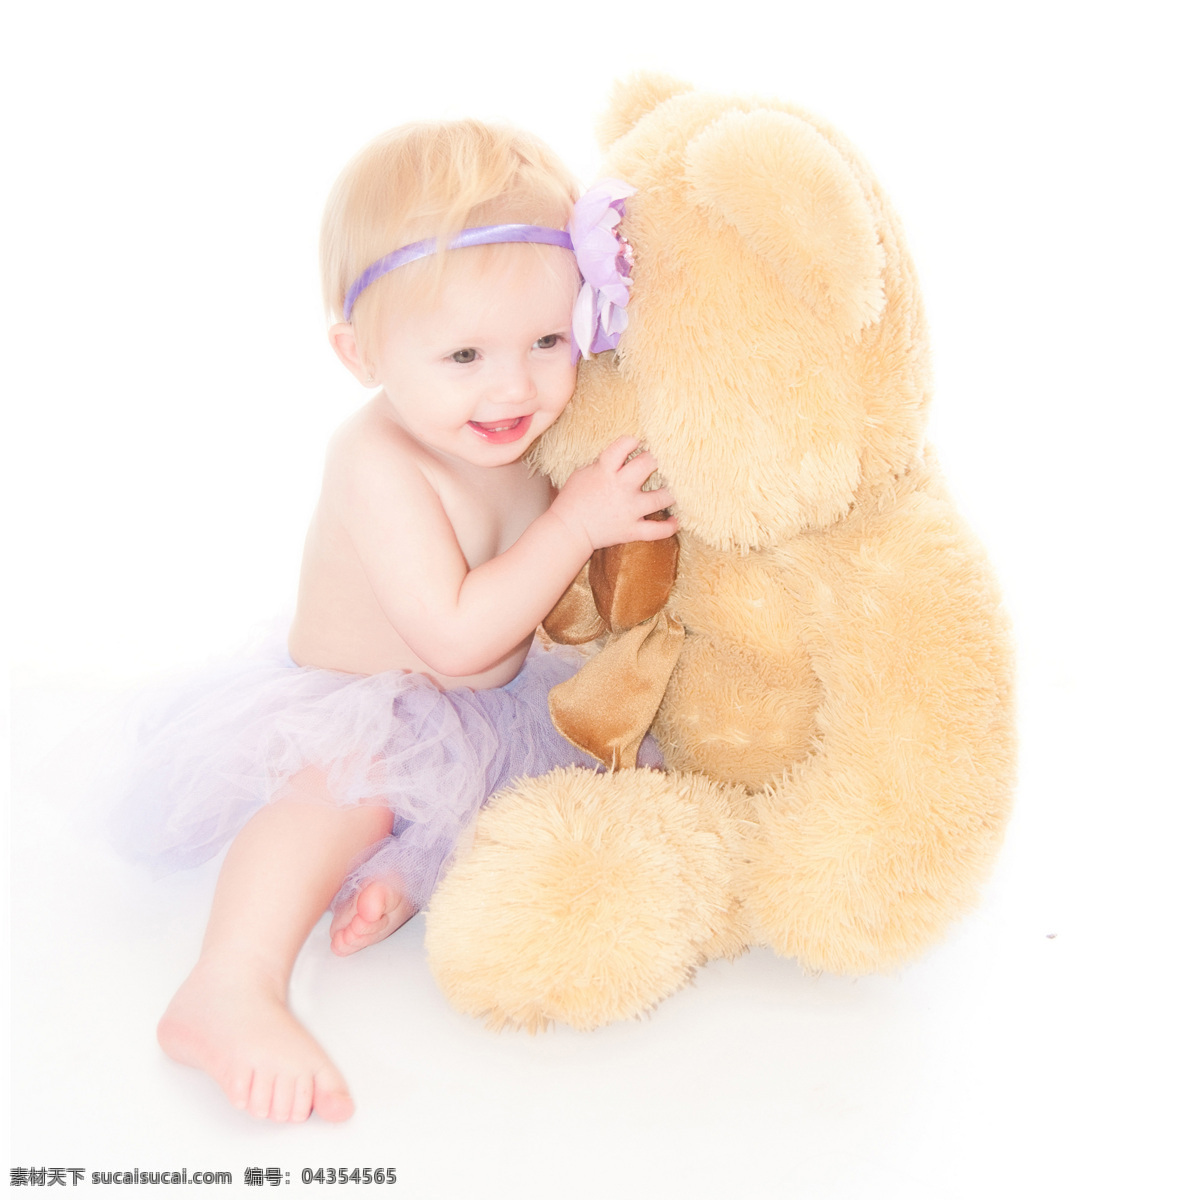 宝宝 玩具 熊 baby 可爱 孩子 小孩 健康宝宝 外国宝宝 宝宝玩耍 玩具熊 儿童幼儿 宝宝图片 人物图片